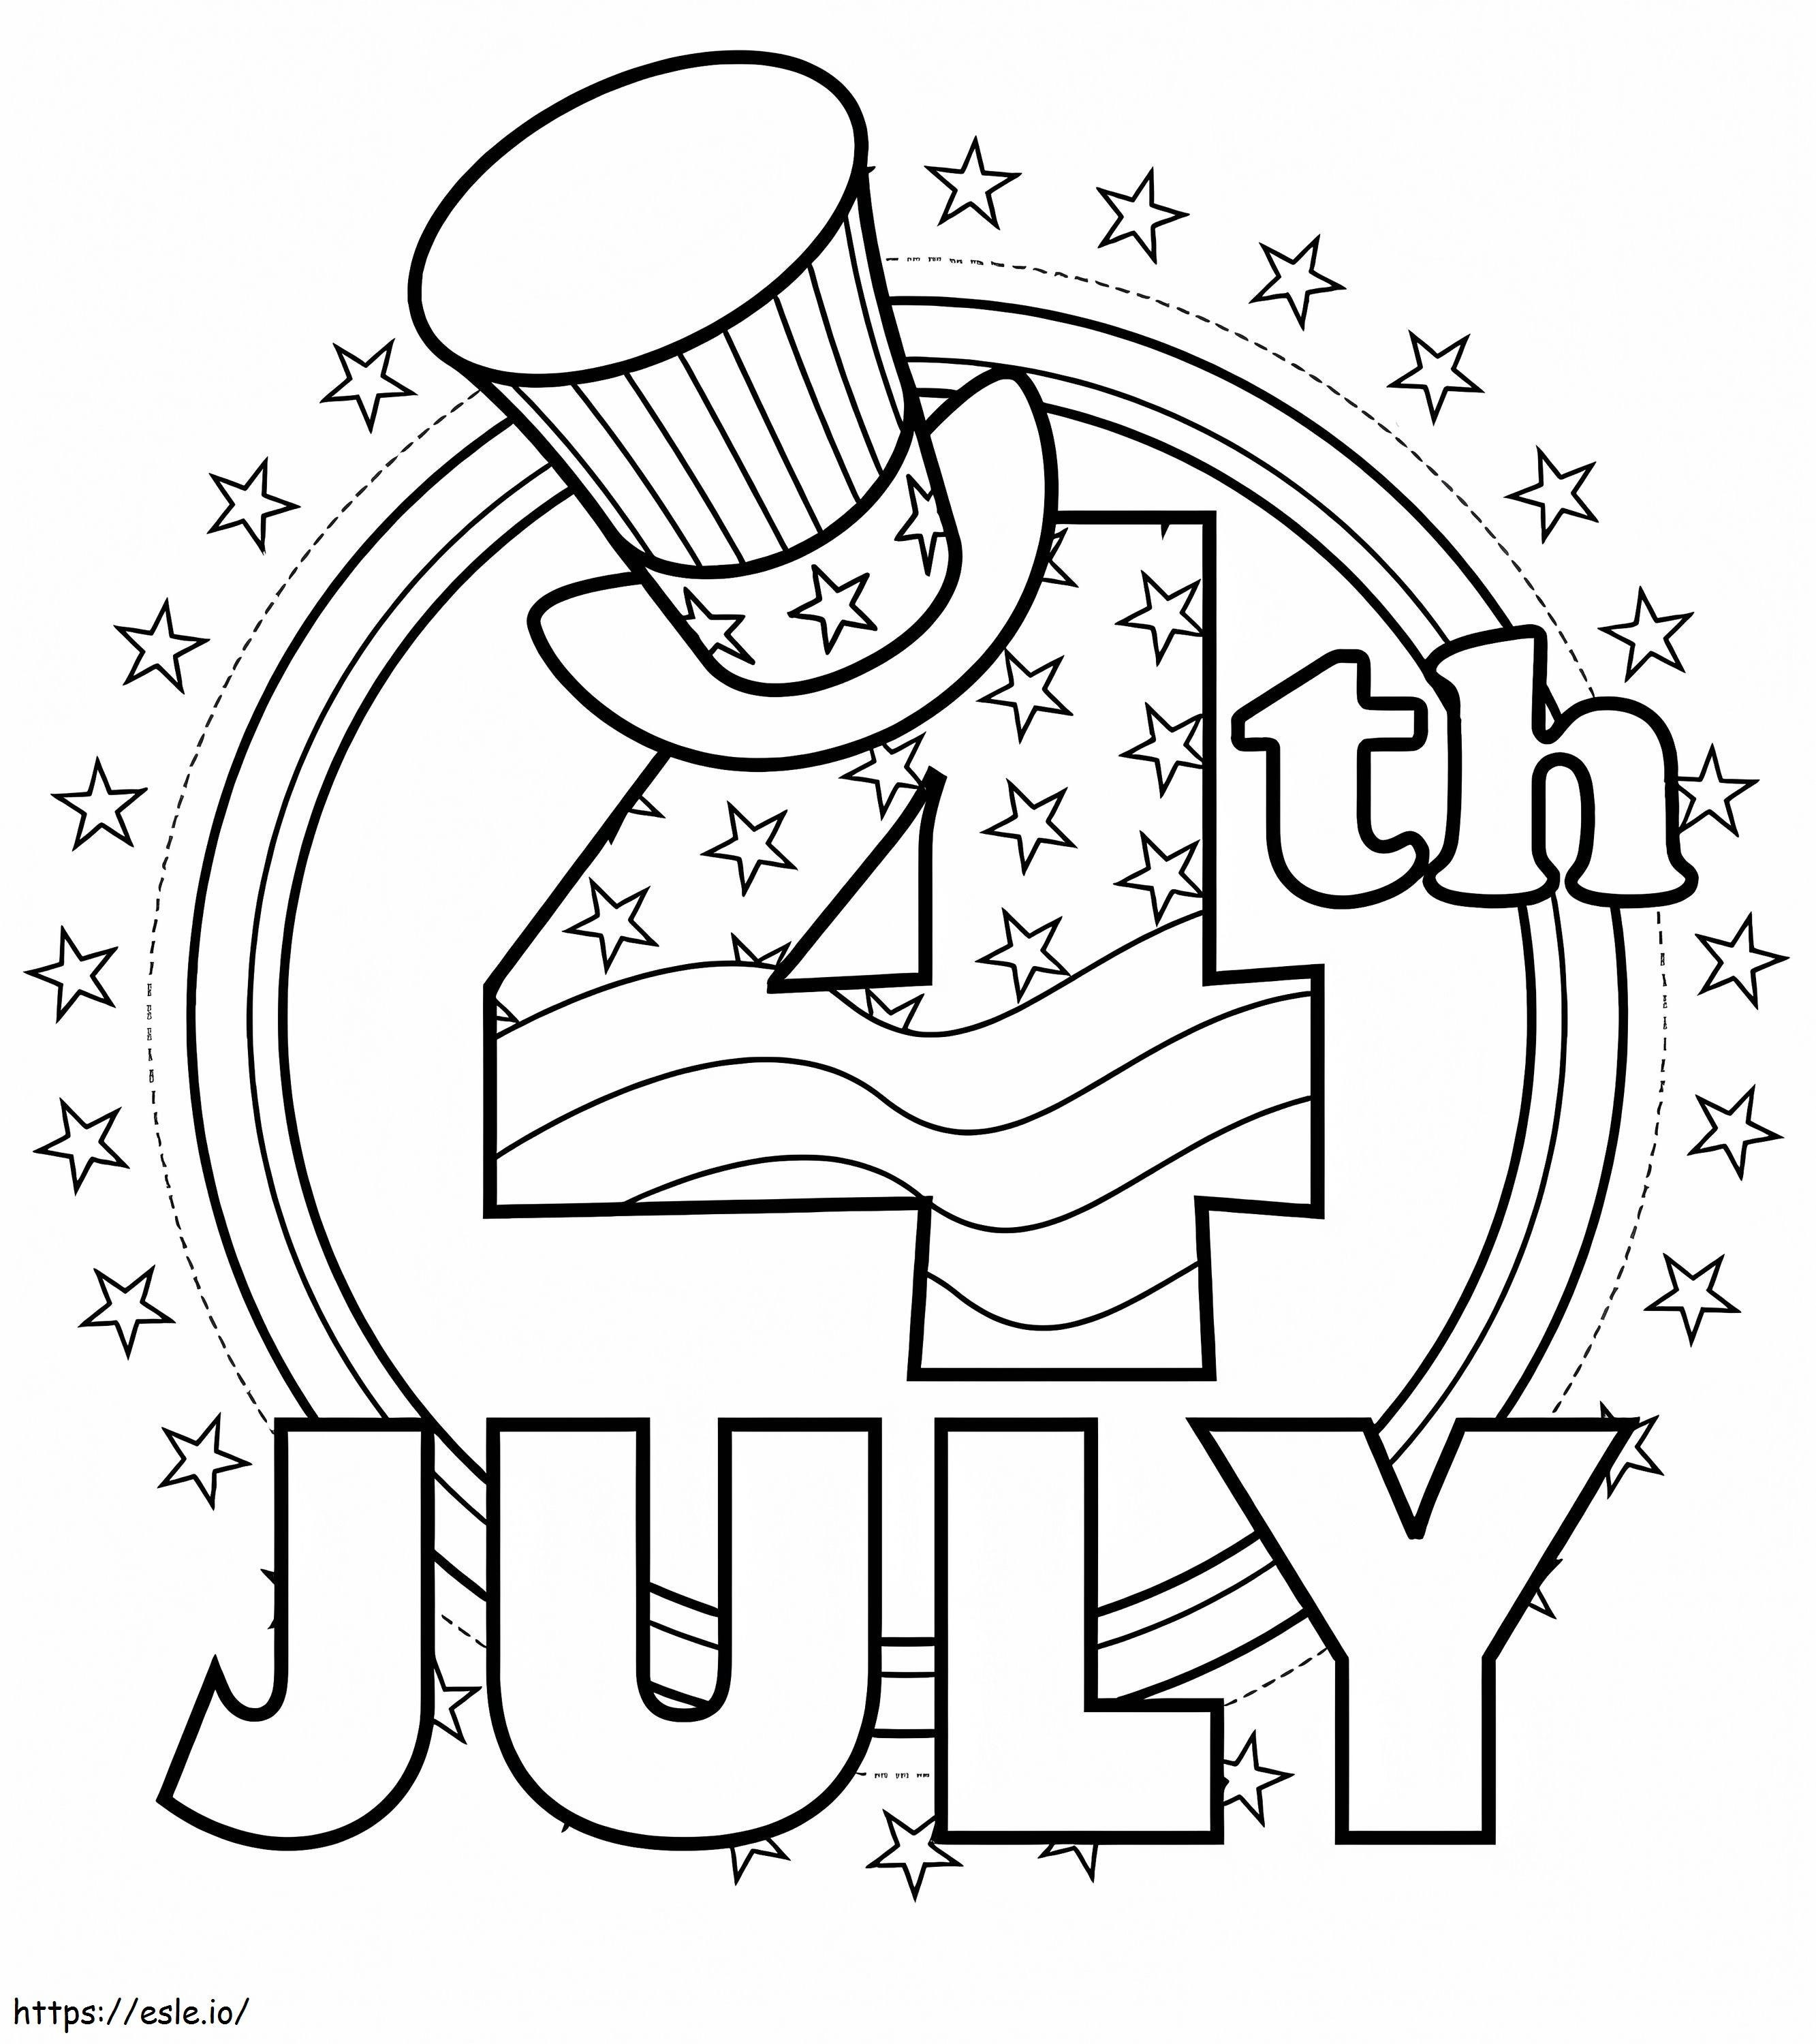 4 luglio, festa dell'indipendenza americana da colorare